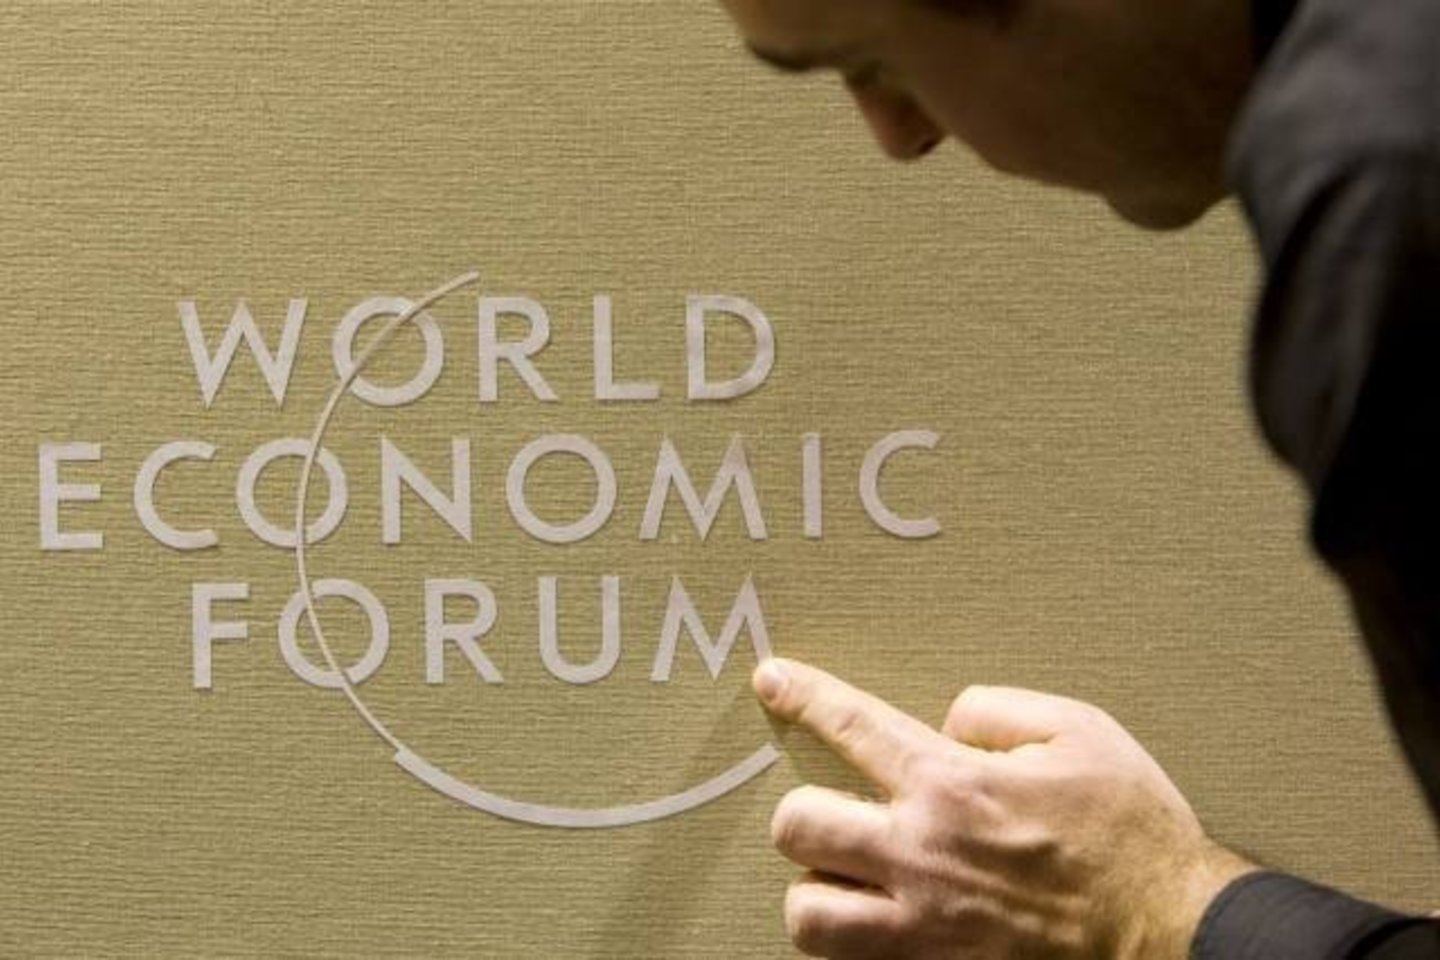 Pasaulio ekonomikos forumas, kuris vyksta elitiniame Šveicarijos alpių kurorte Davose,  seniai laikomas turtuolių sambūriu. Čia pasaulio būklė aptariama ne tik per viešas diskusijų sesijas, bet ir per daugybę pobūvių su šampanu ir ikrais.<br>Reuters/Scanpix nuotr.